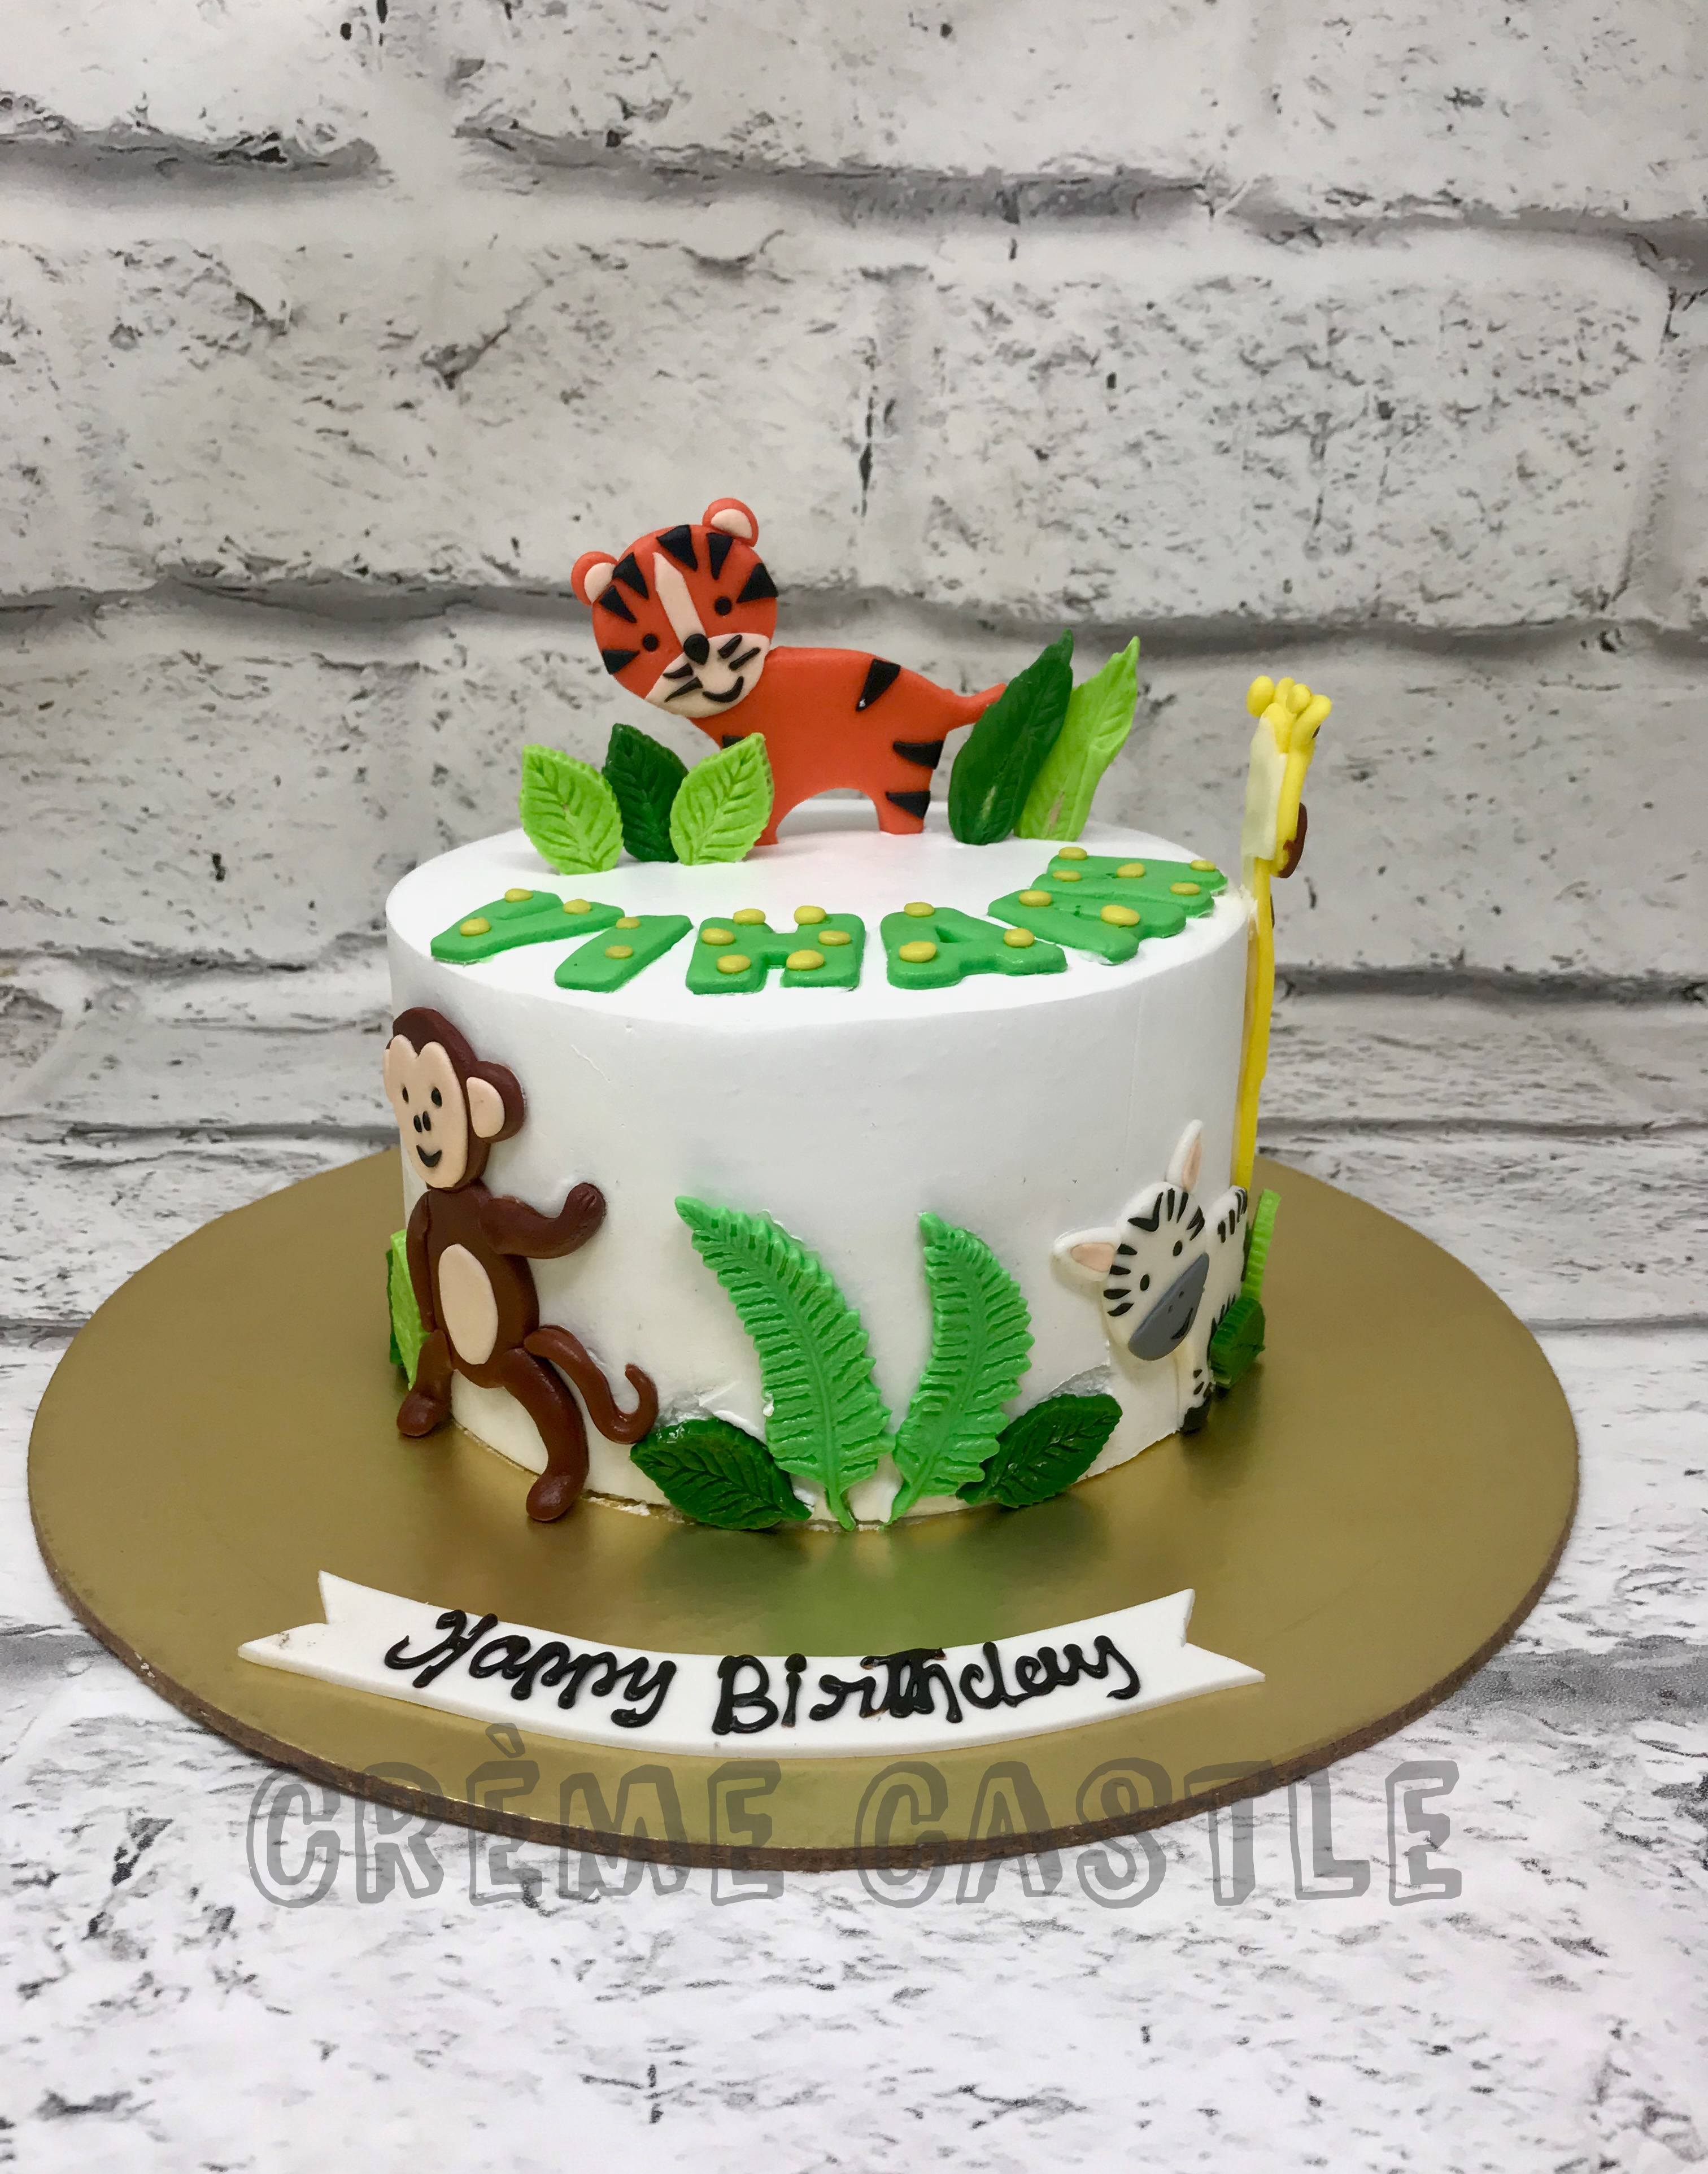 Royal Chocolate Tiger Cake - Nue Juniper Digital Artwork and Prints -  Digital Art, Food & Beverage, Dessert & Candy, Cake - ArtPal